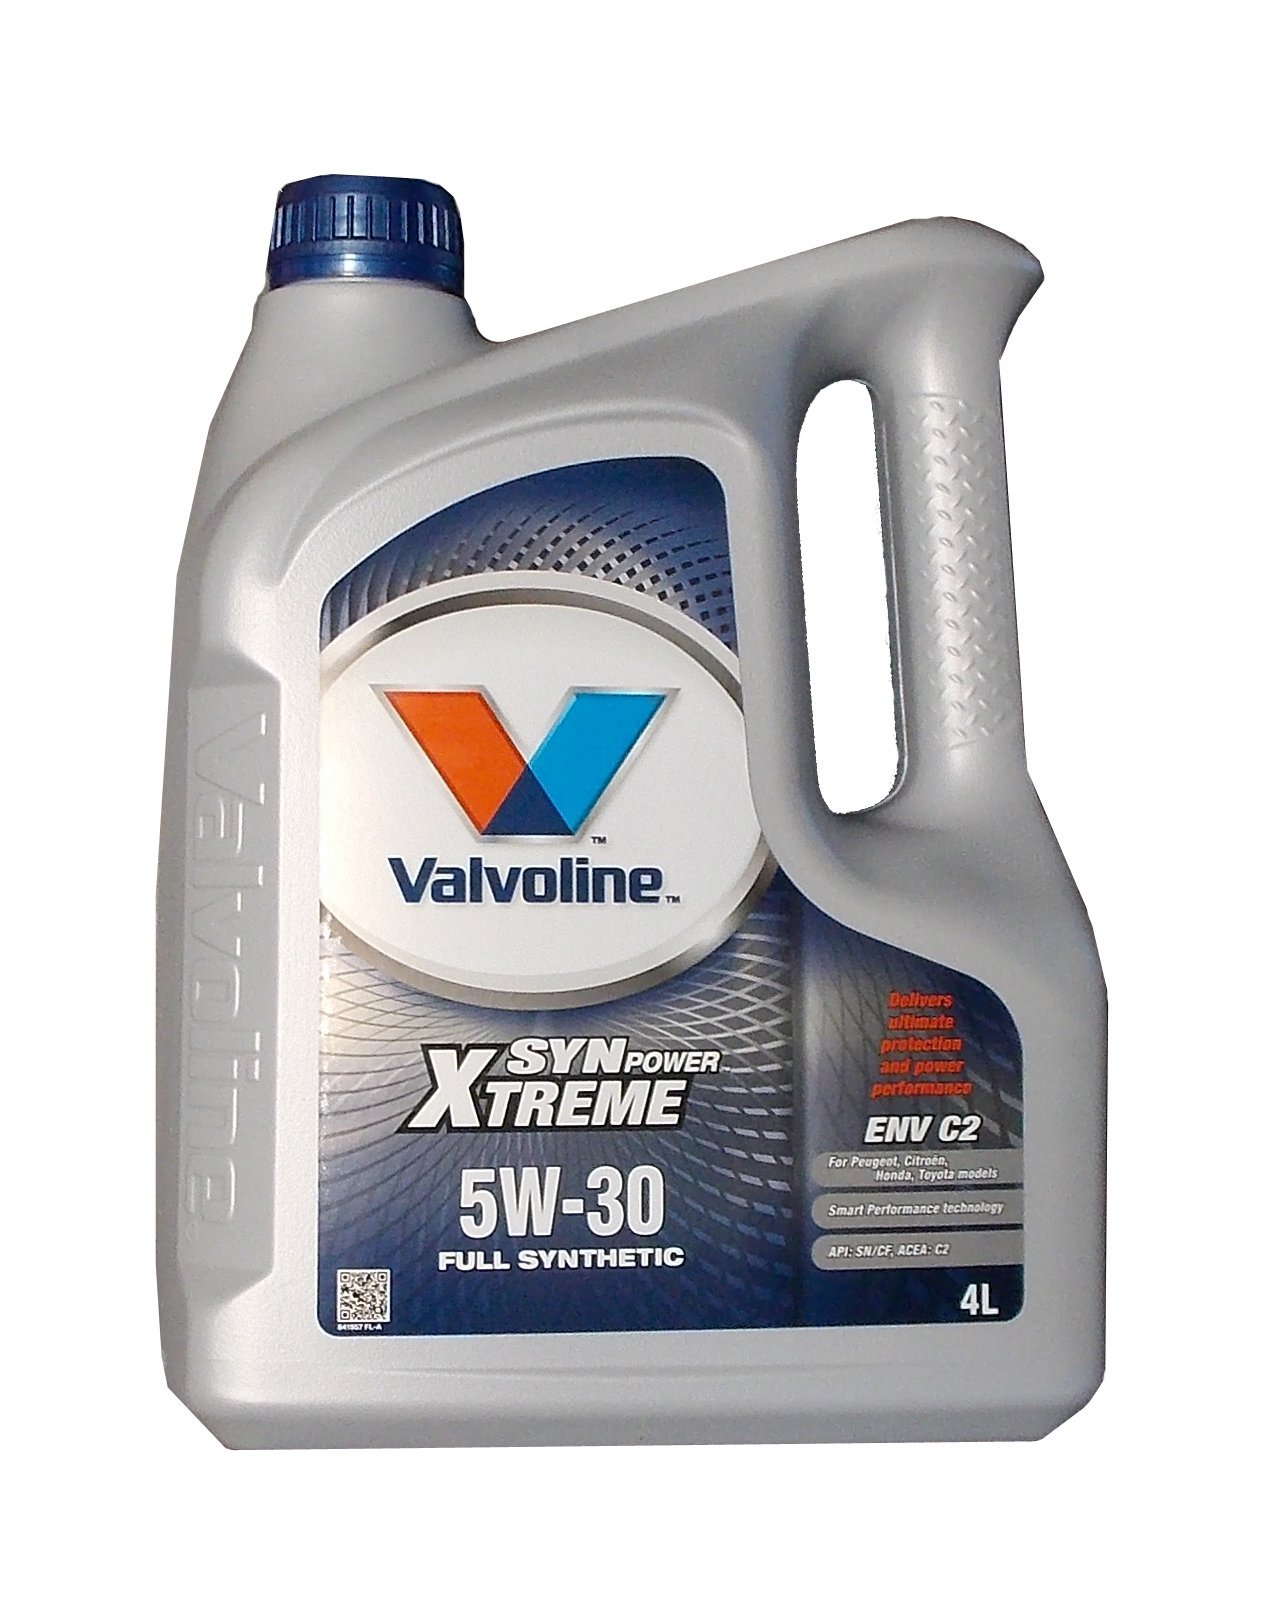 Valvoline 4L vollsynthetisches Motoröl SynPower Xtreme 5W-30 ENV C2 katalysatorverträglich 872521 vorm. 872521 von Valvoline